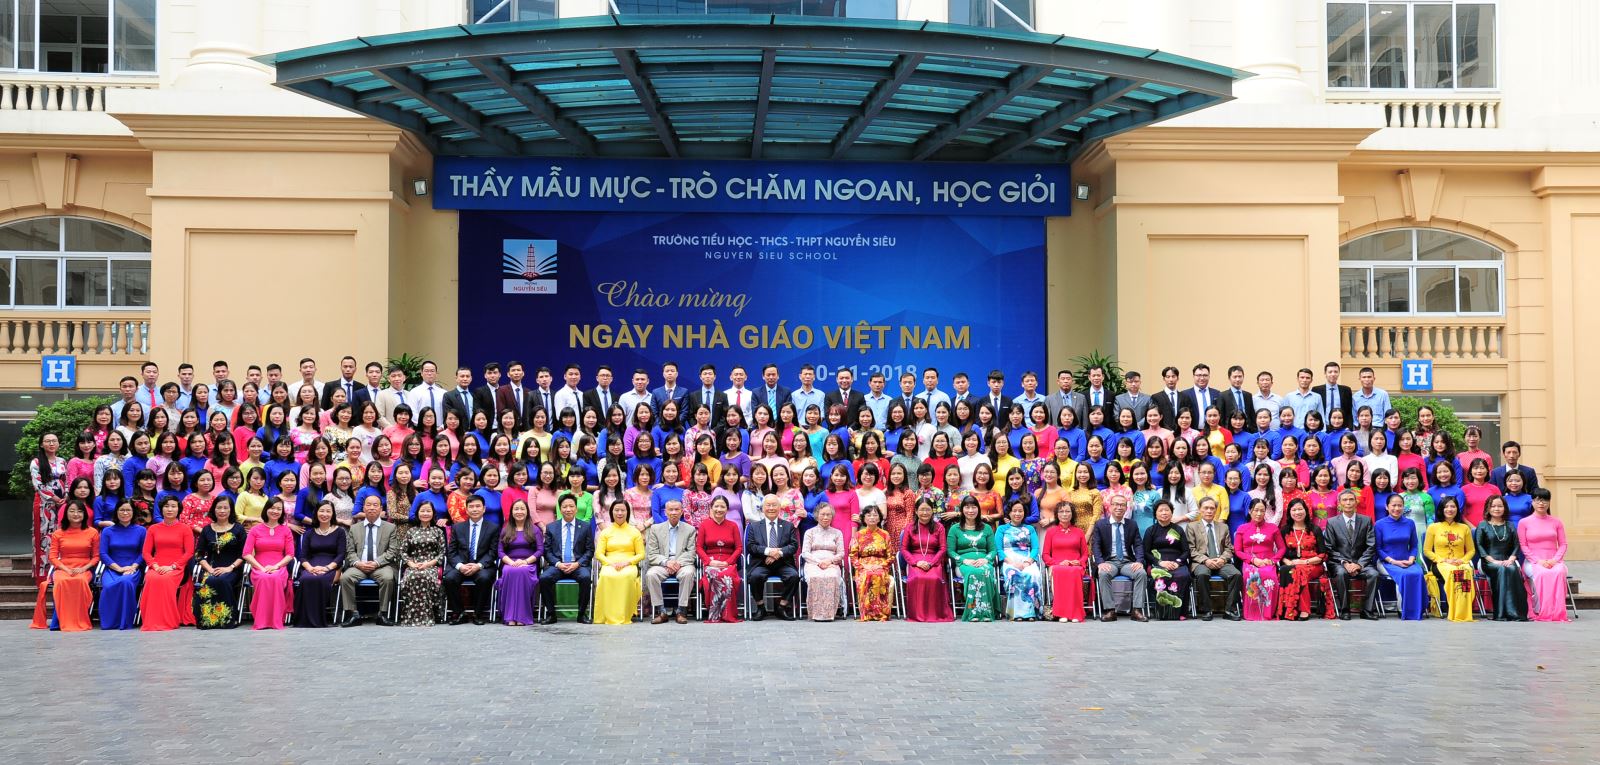 Hội đồng 3 cấp tổ chức Kỷ niệm ngày Nhà giáo Việt Nam 2018